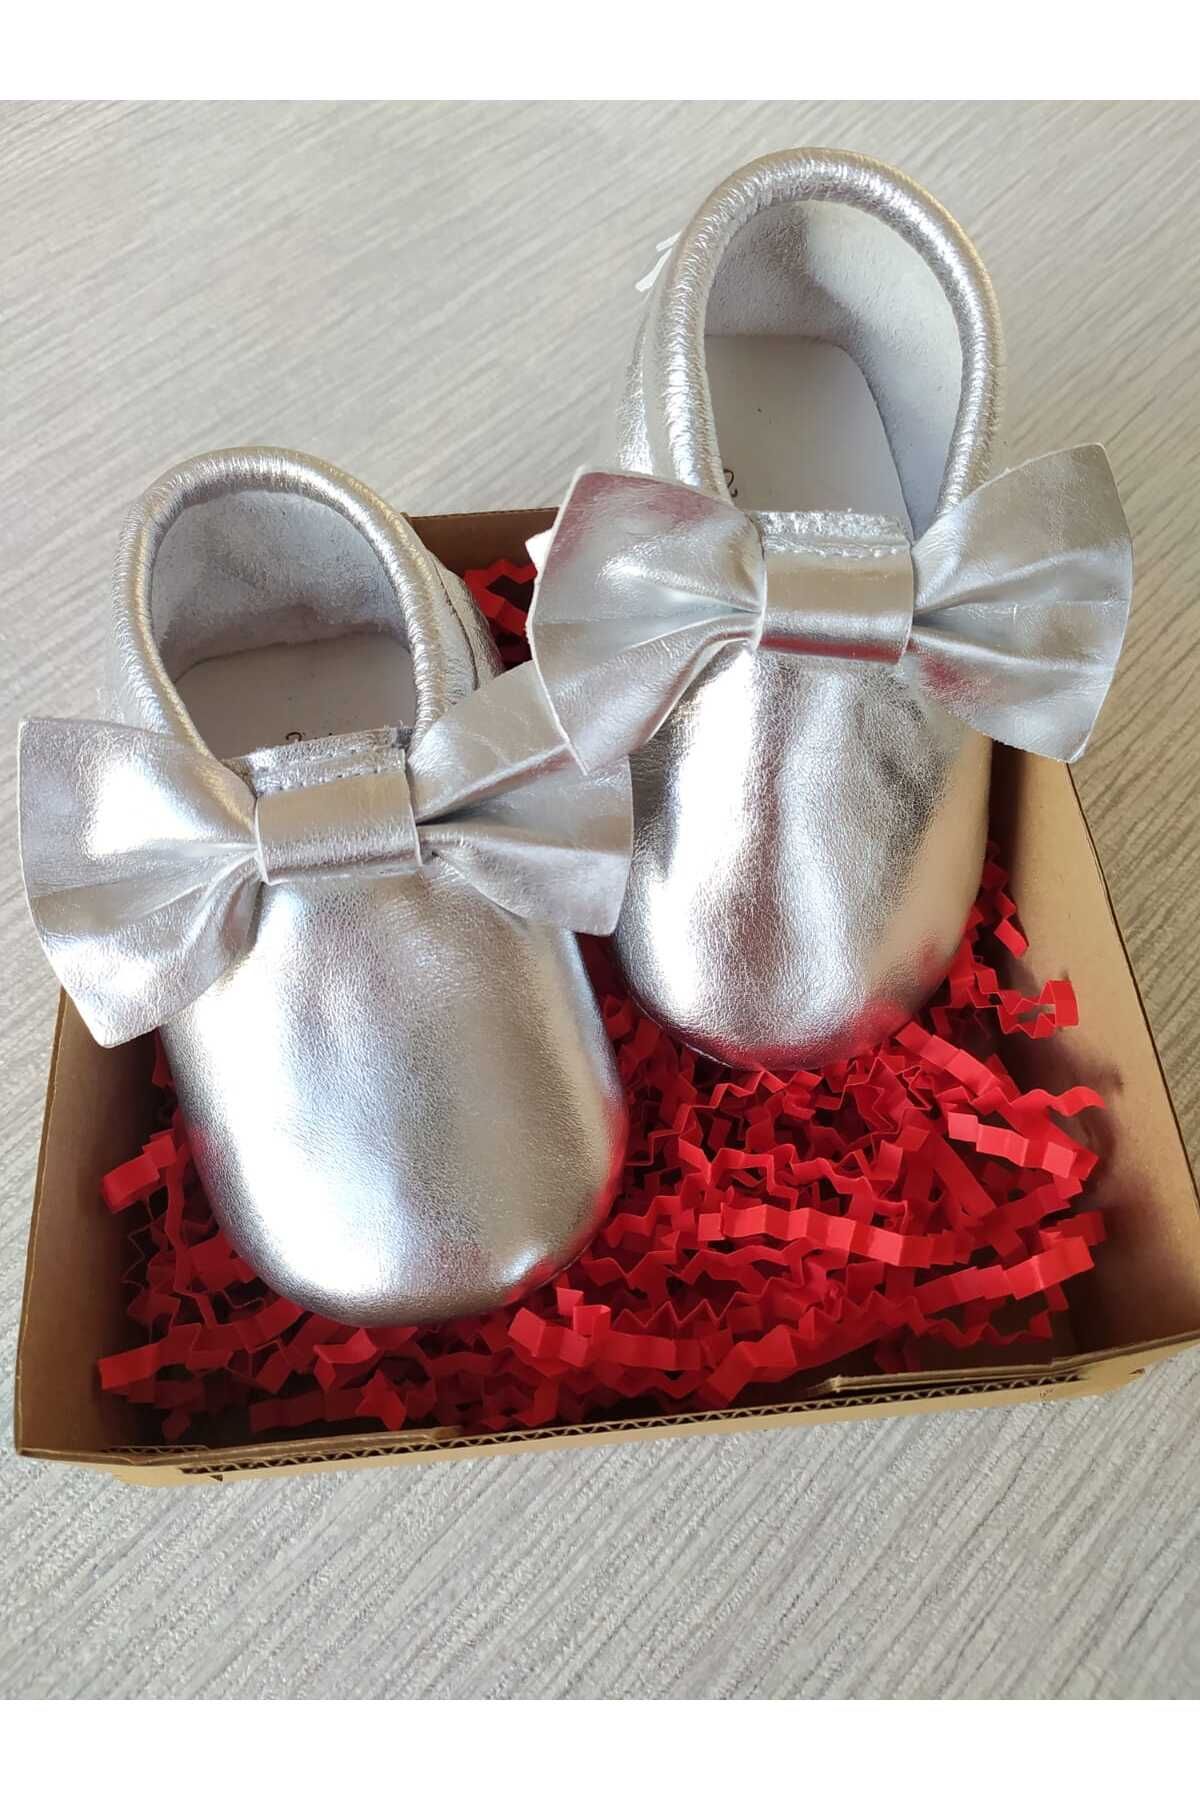 MİNİBİRİ Bella Model Gümüş Renk Bebek Makosen Patik Bebek Ayakkabısı